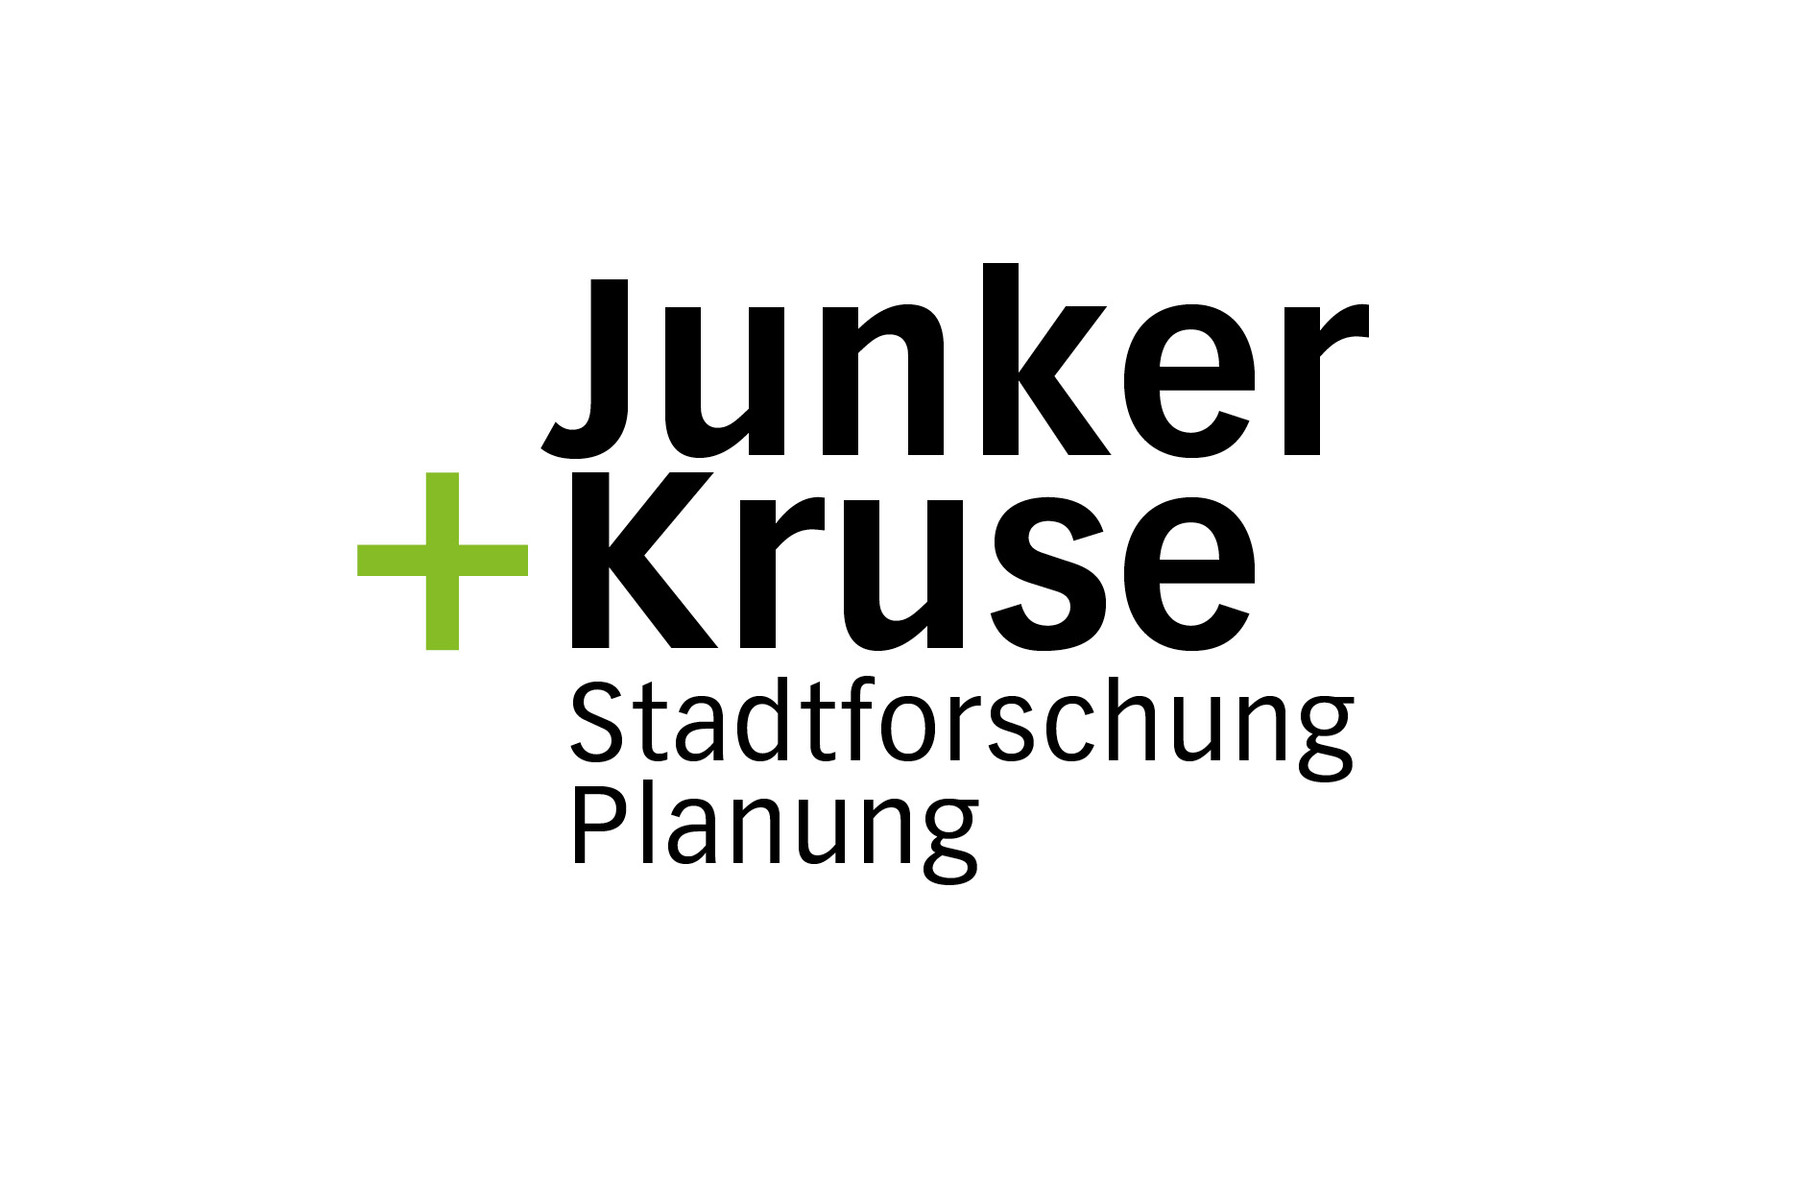 Junker und Kruse — Stadtforschung Planung